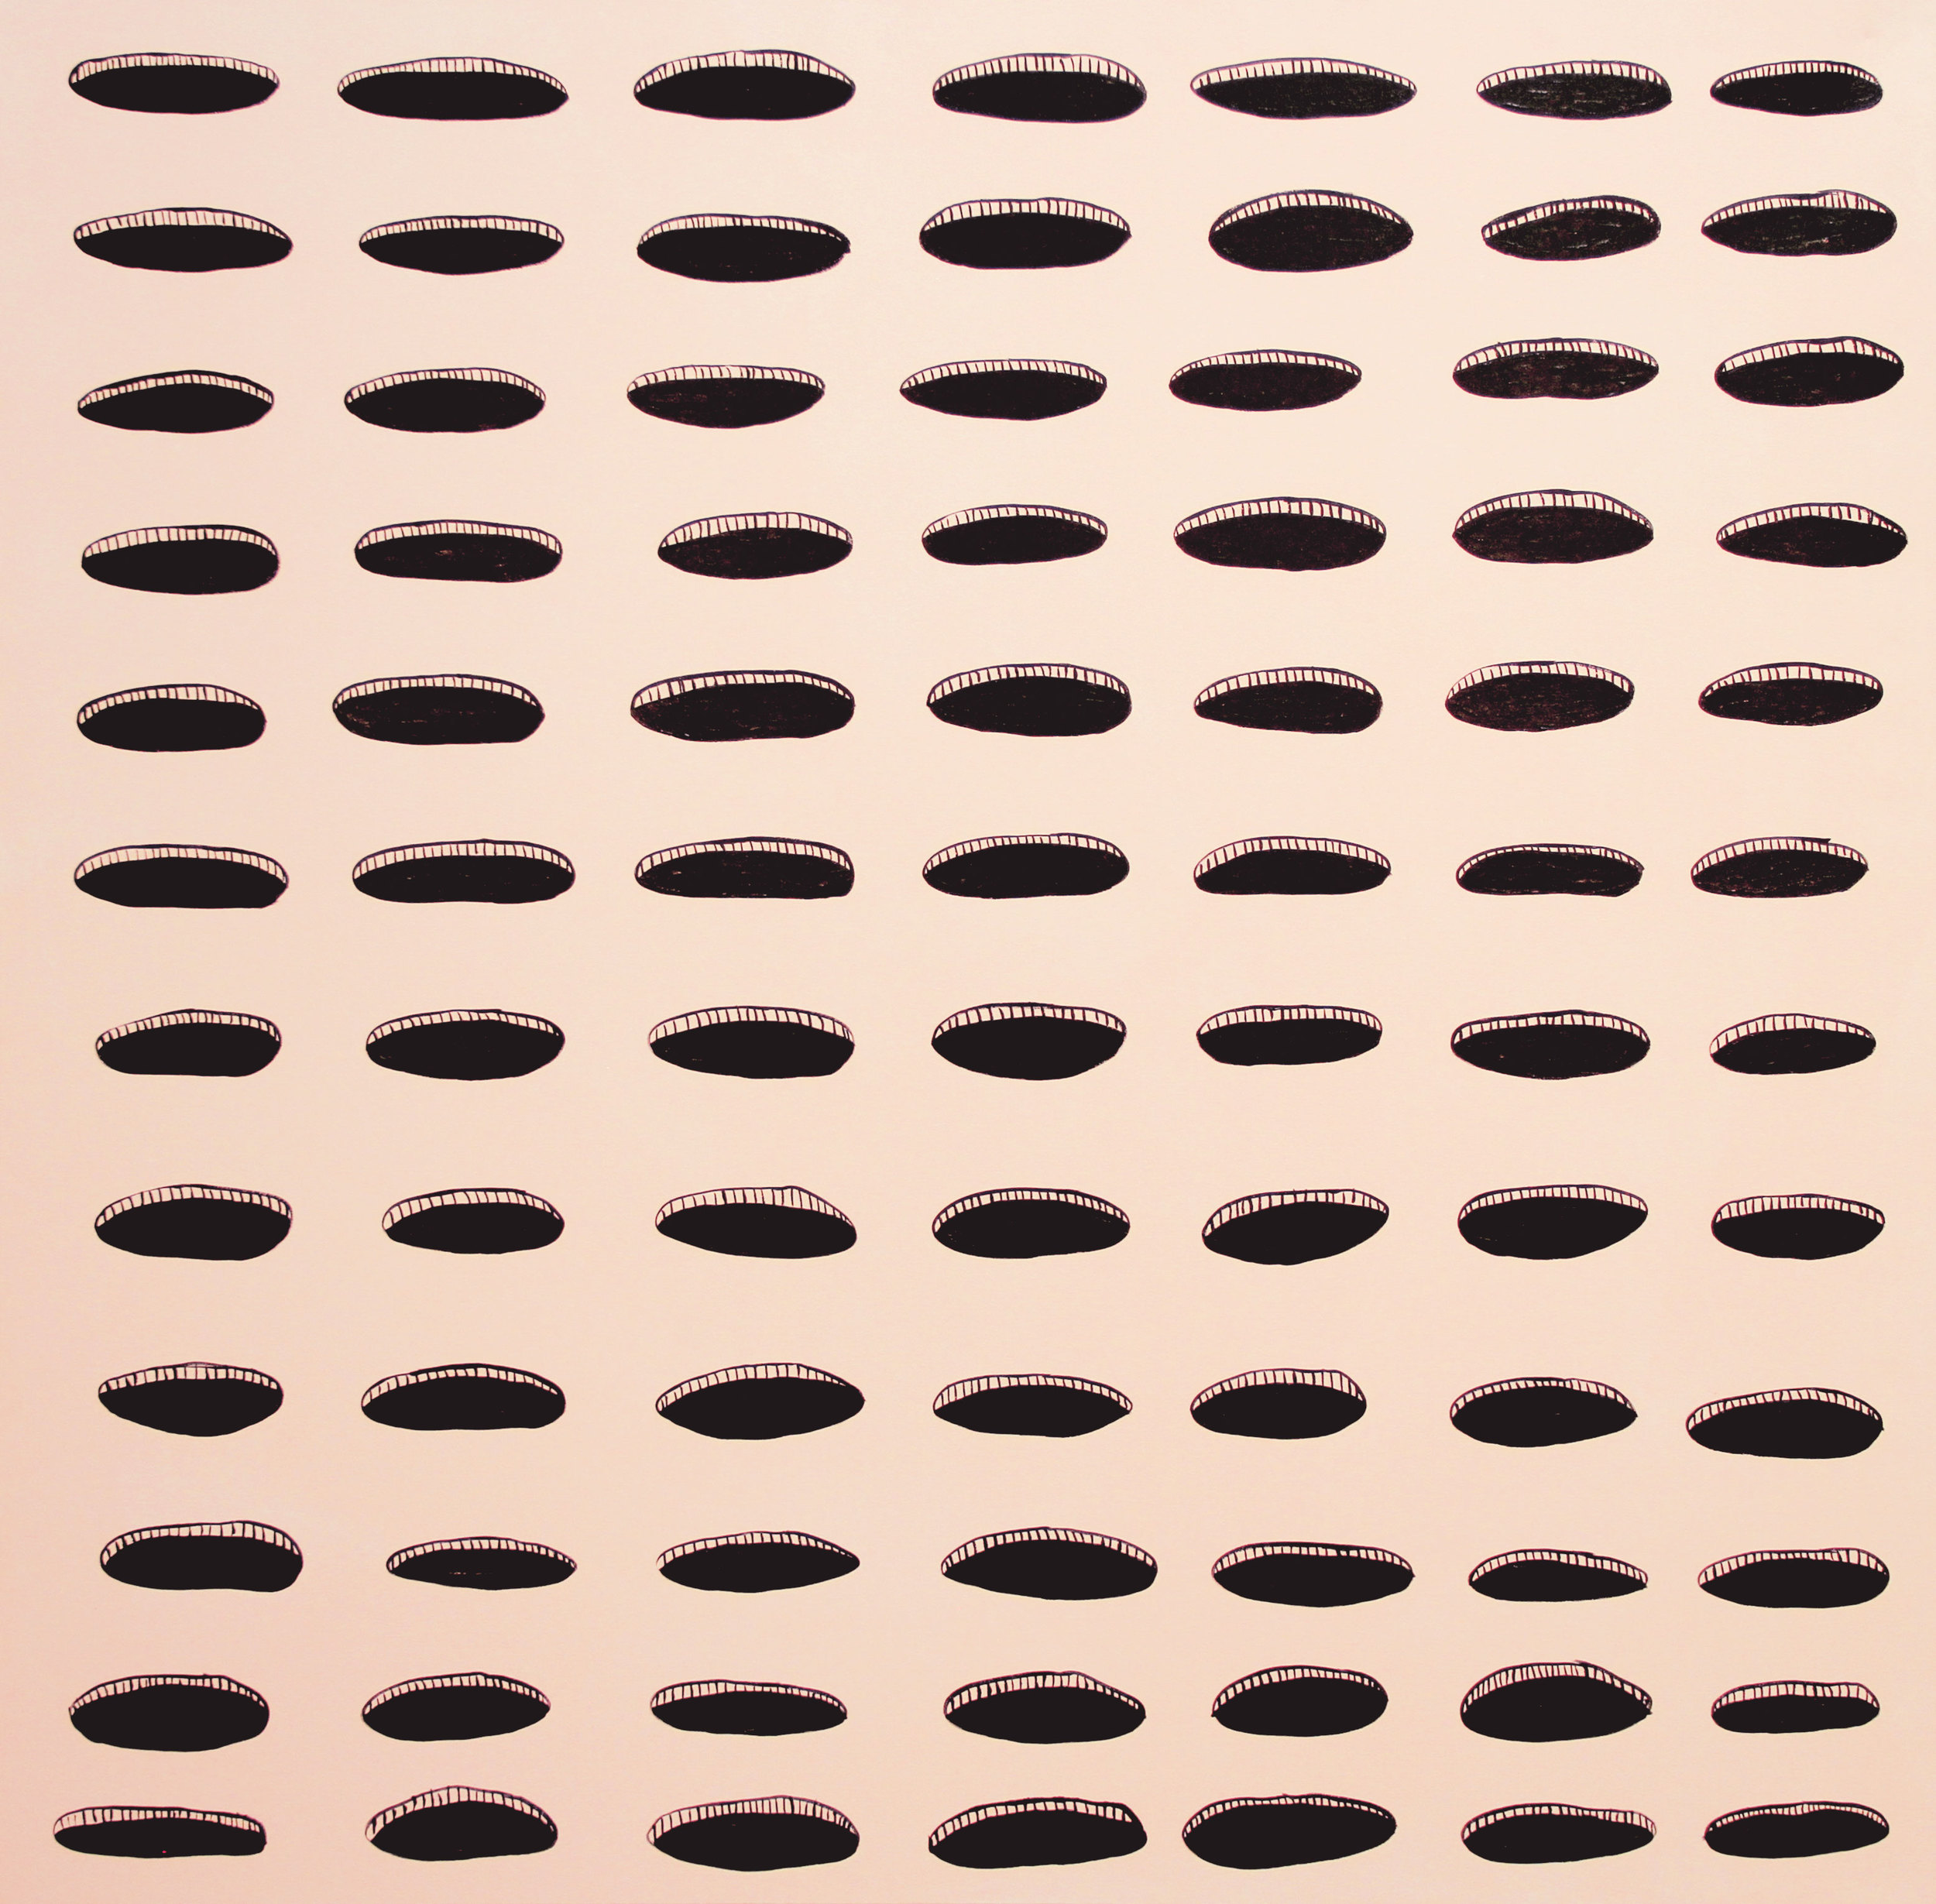   holes  acrylic on canvas 48" x 48" 2015 